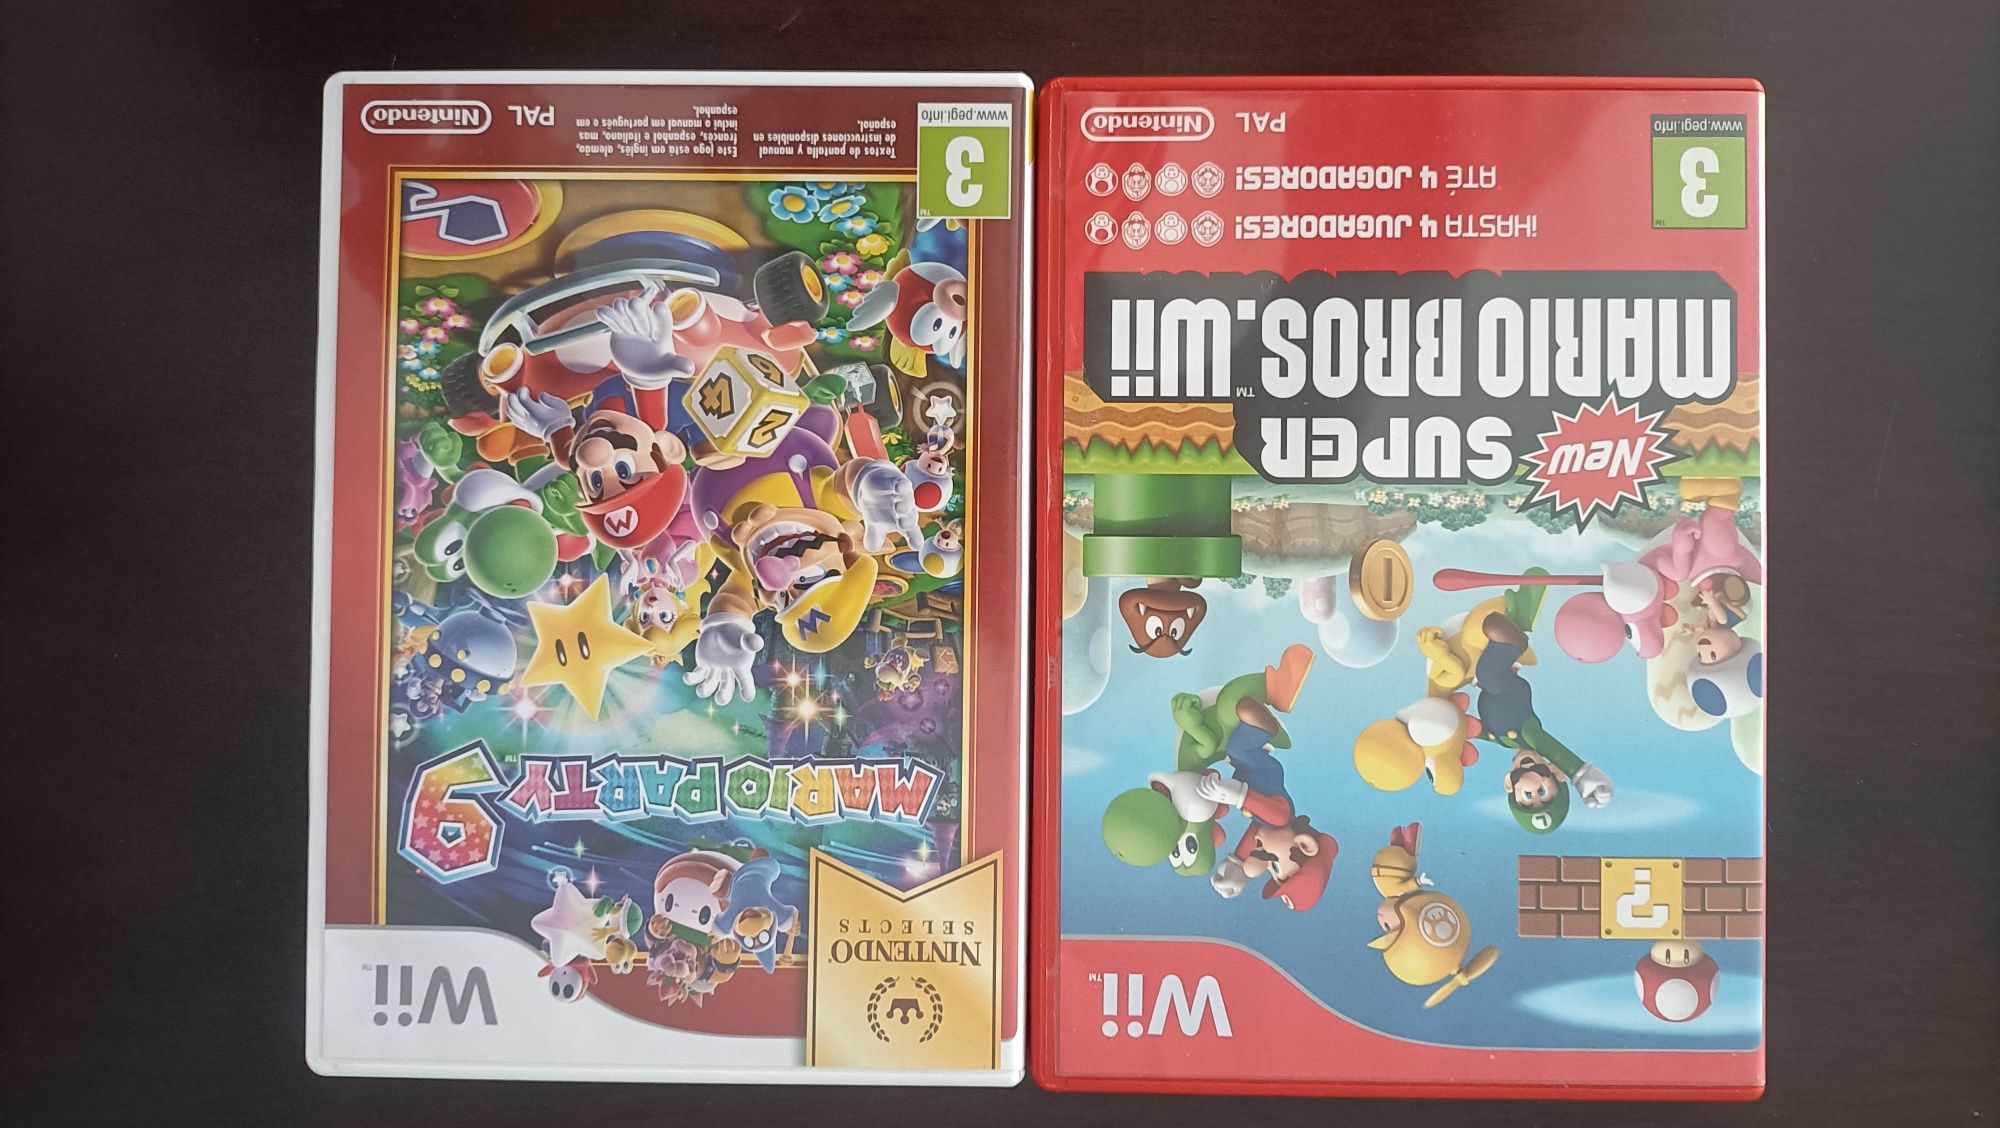 Jogos Wii - Super Mario Bros e Mario Party 9 Paredes • OLX Portugal